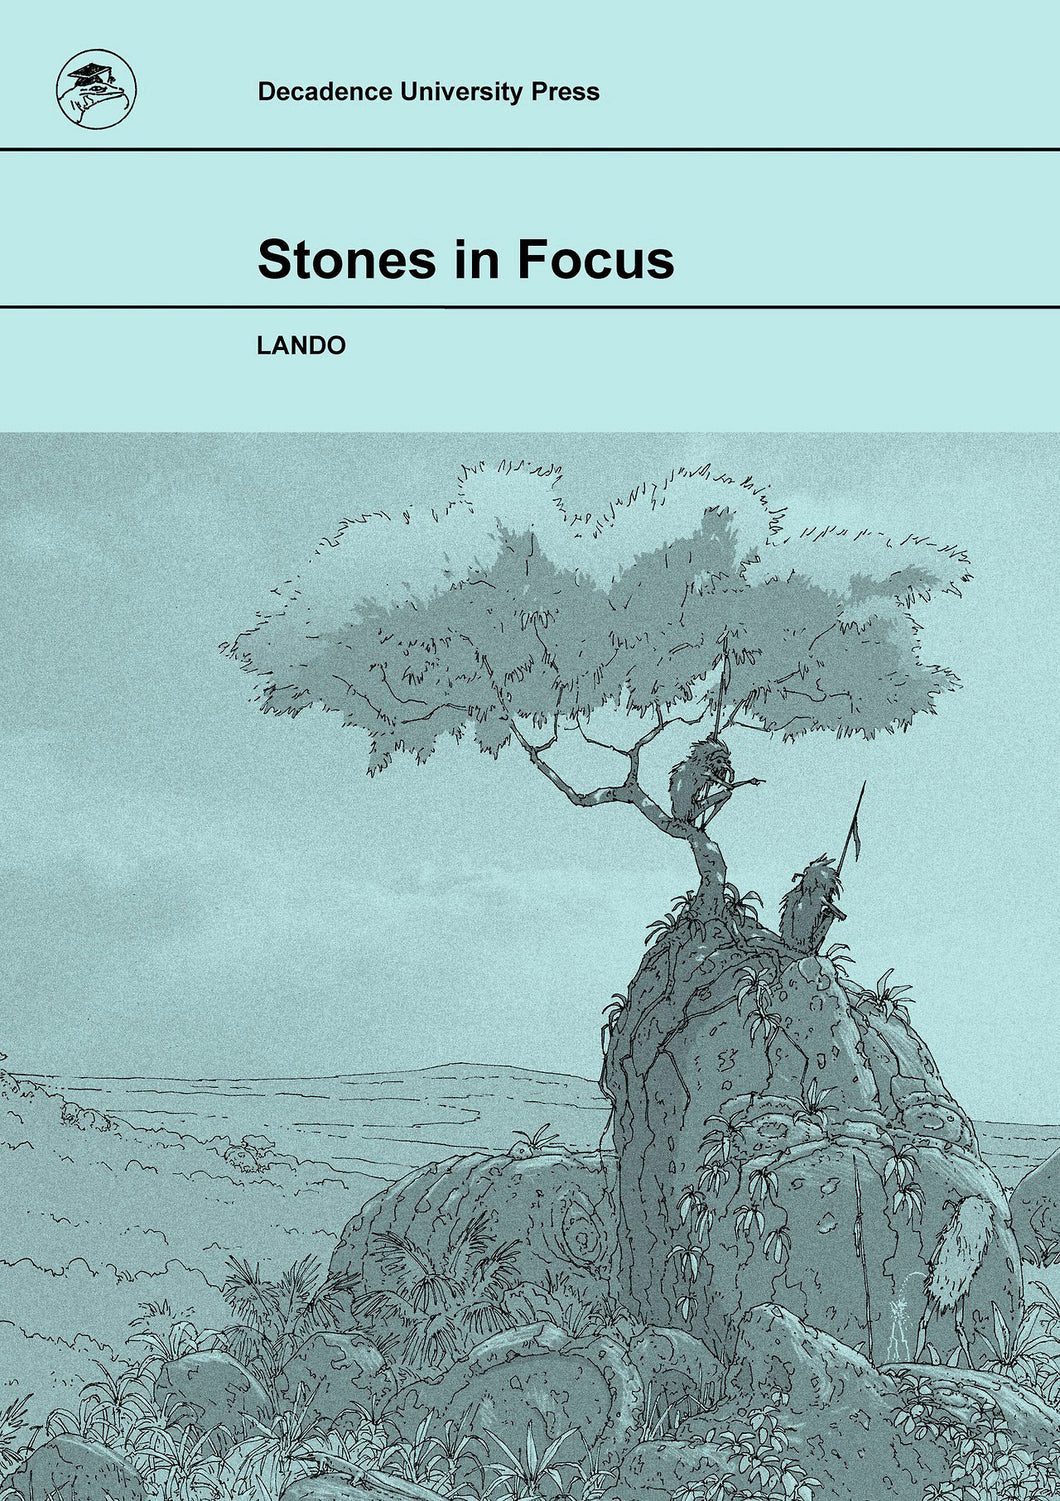 Stones in Focus by Lando